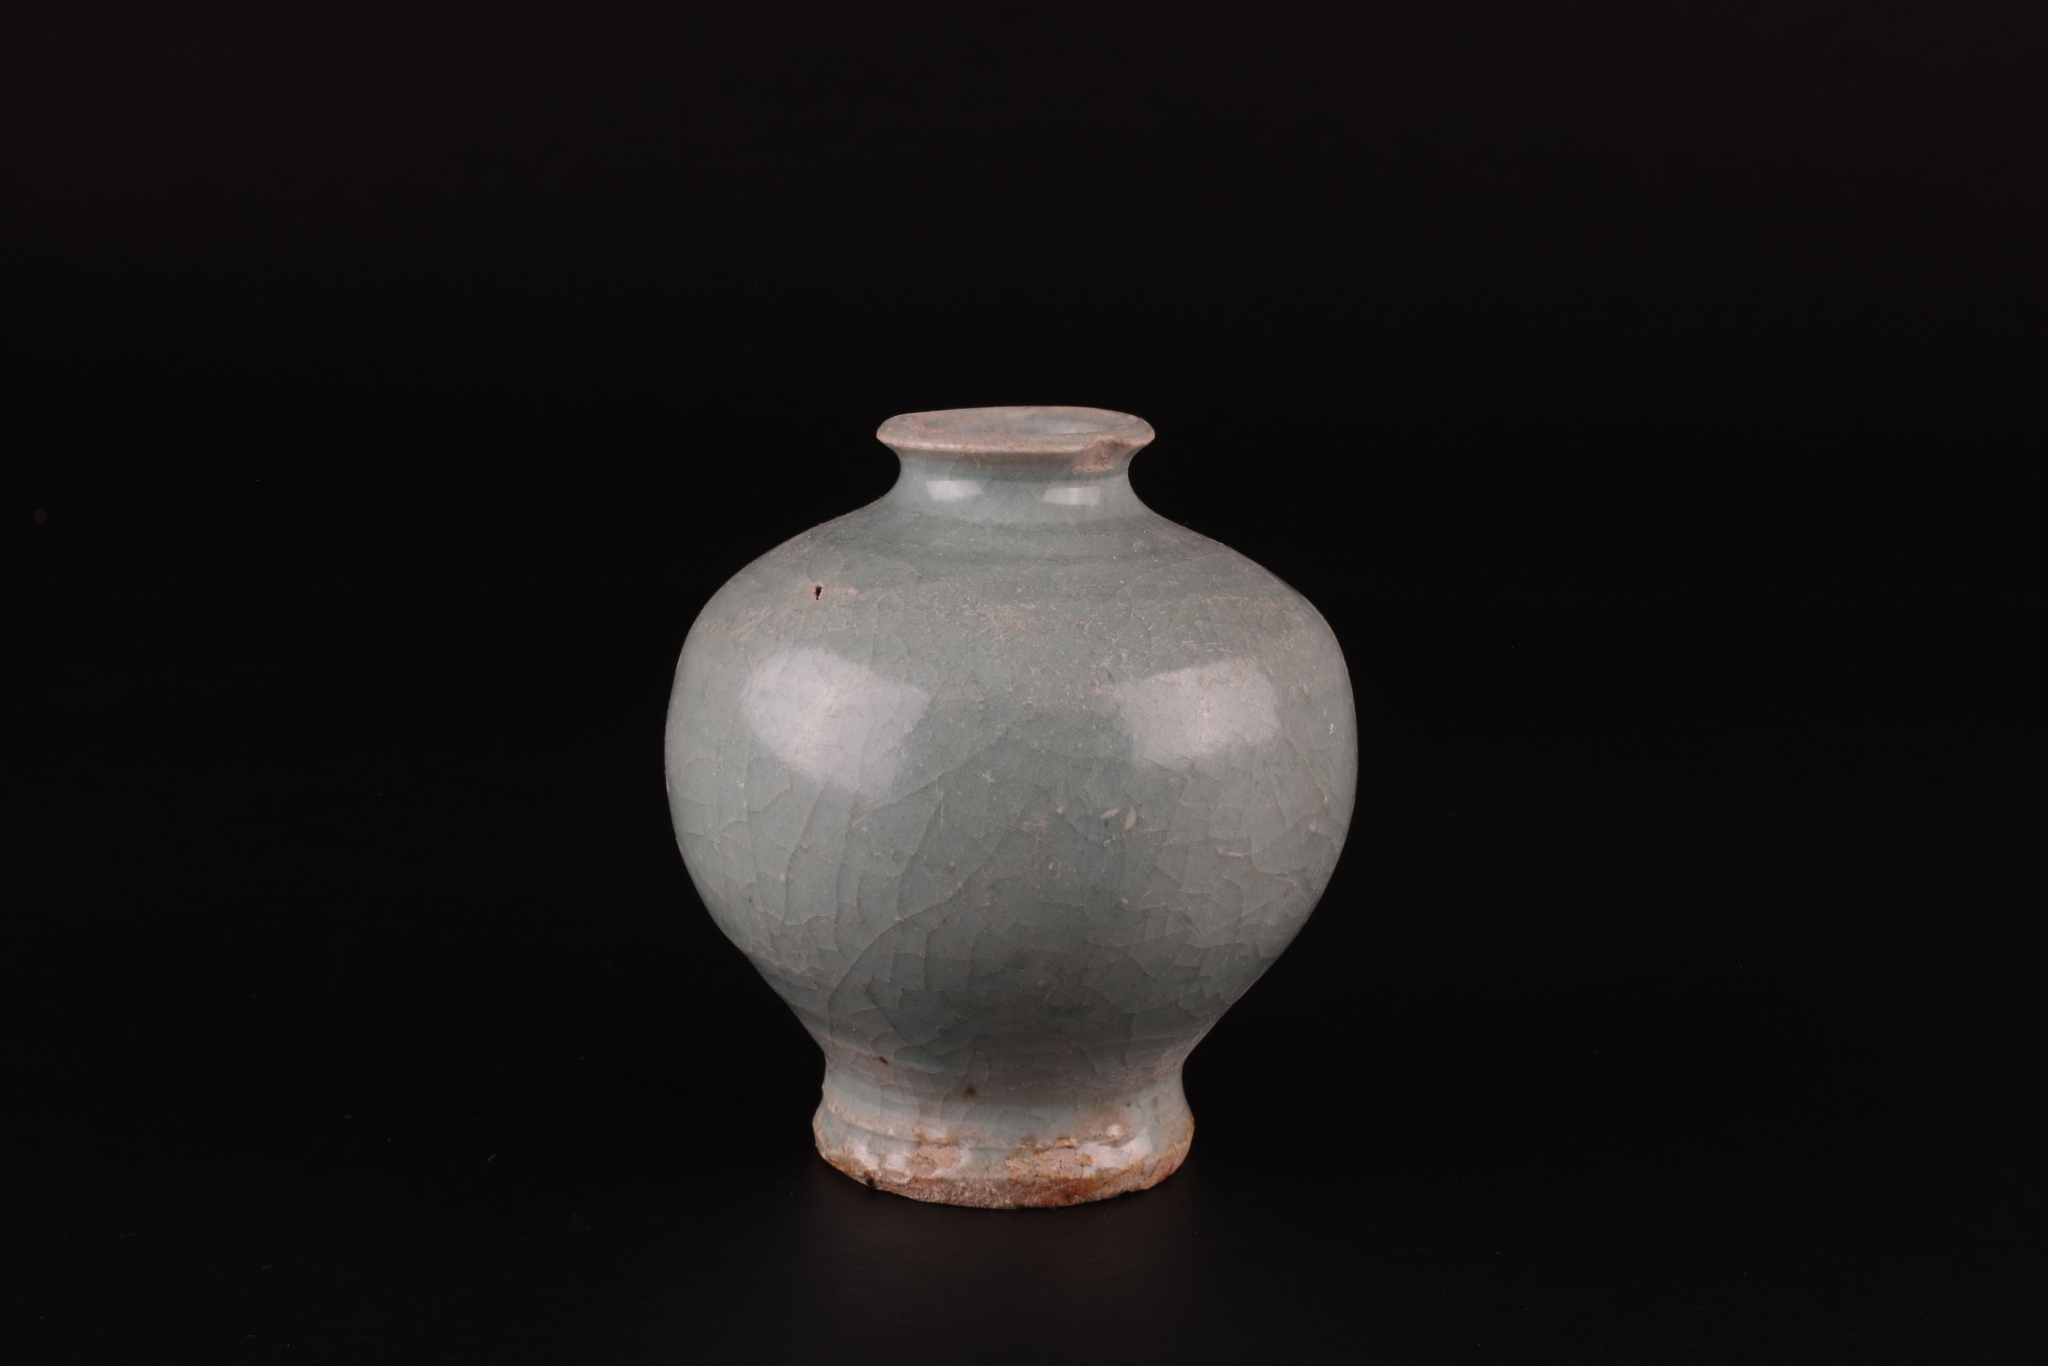 下邳故城遗址上发现的青瓷瓶。下邳故城遗址考古队供图